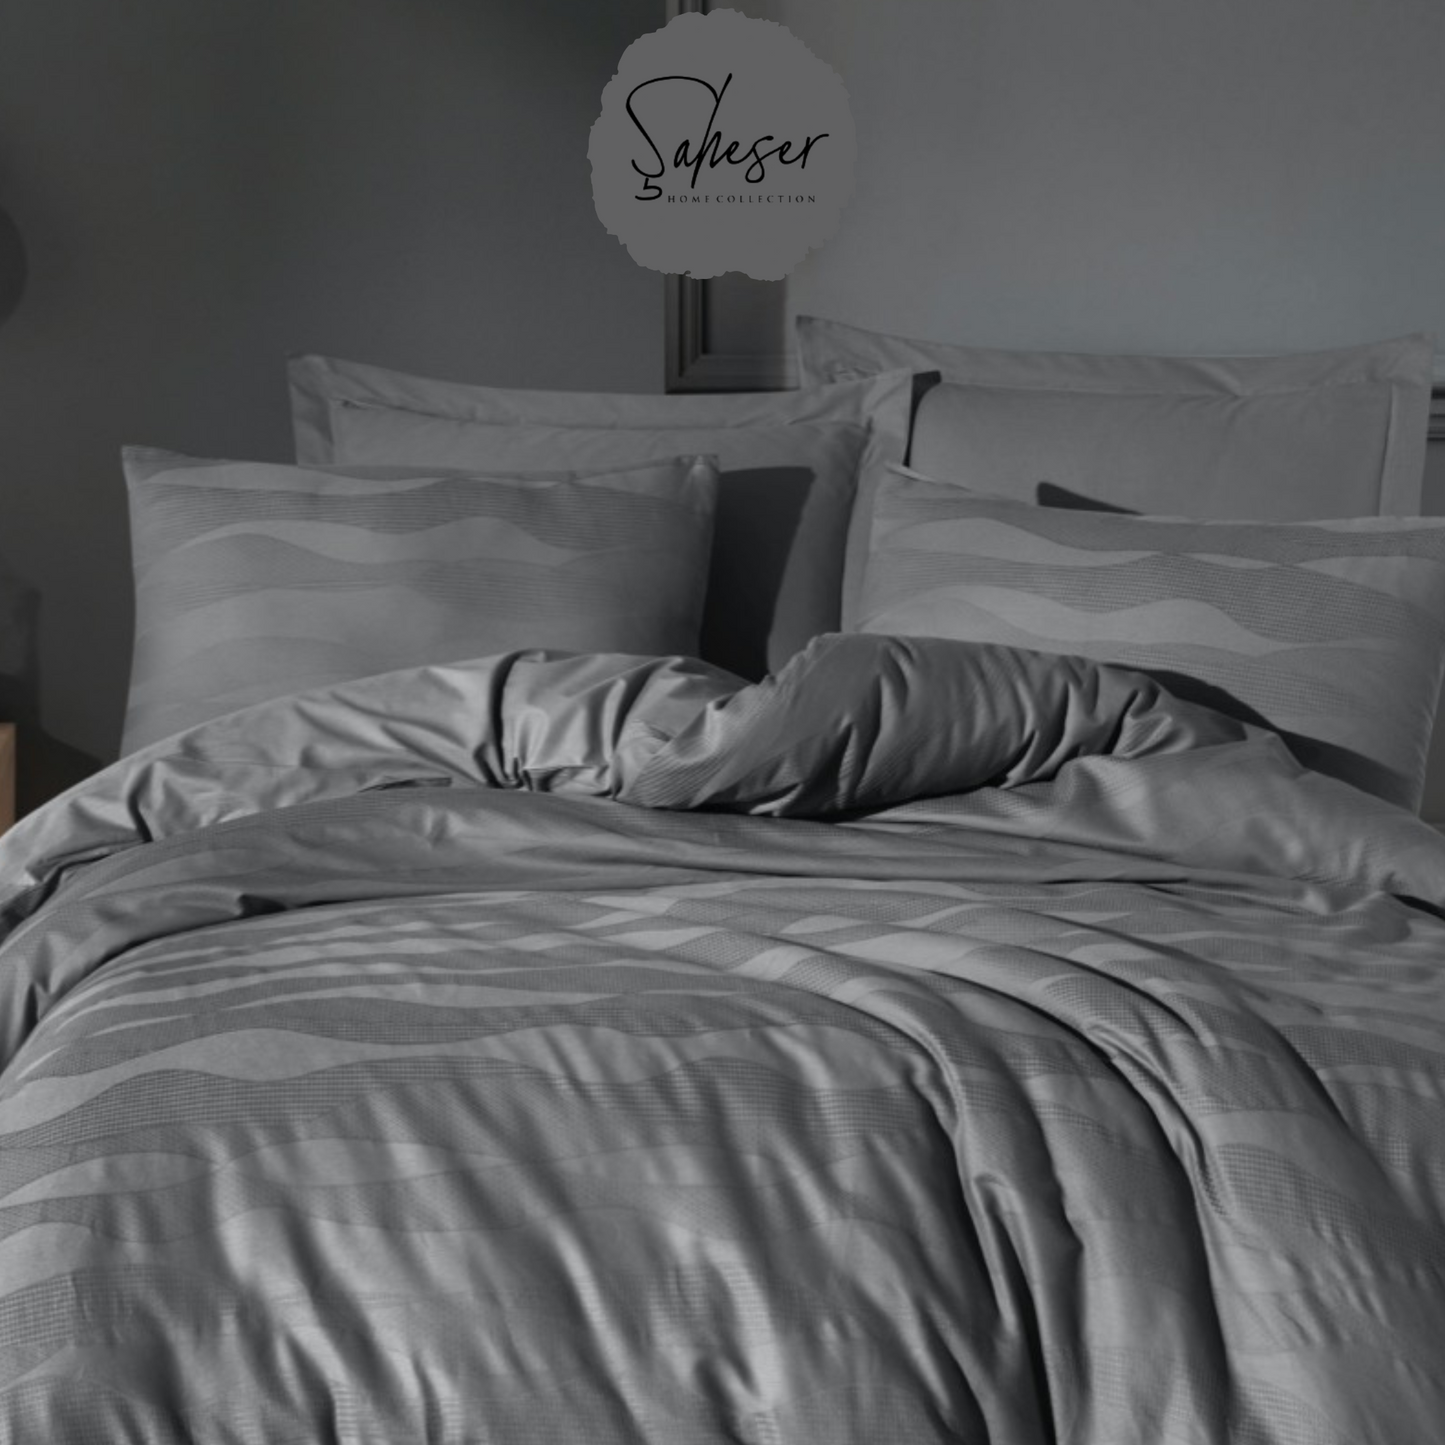 Şaheser Greta 6-teiliges Bettwäsche-Set für Doppelbetten aus 100% Baumwoll-Satin